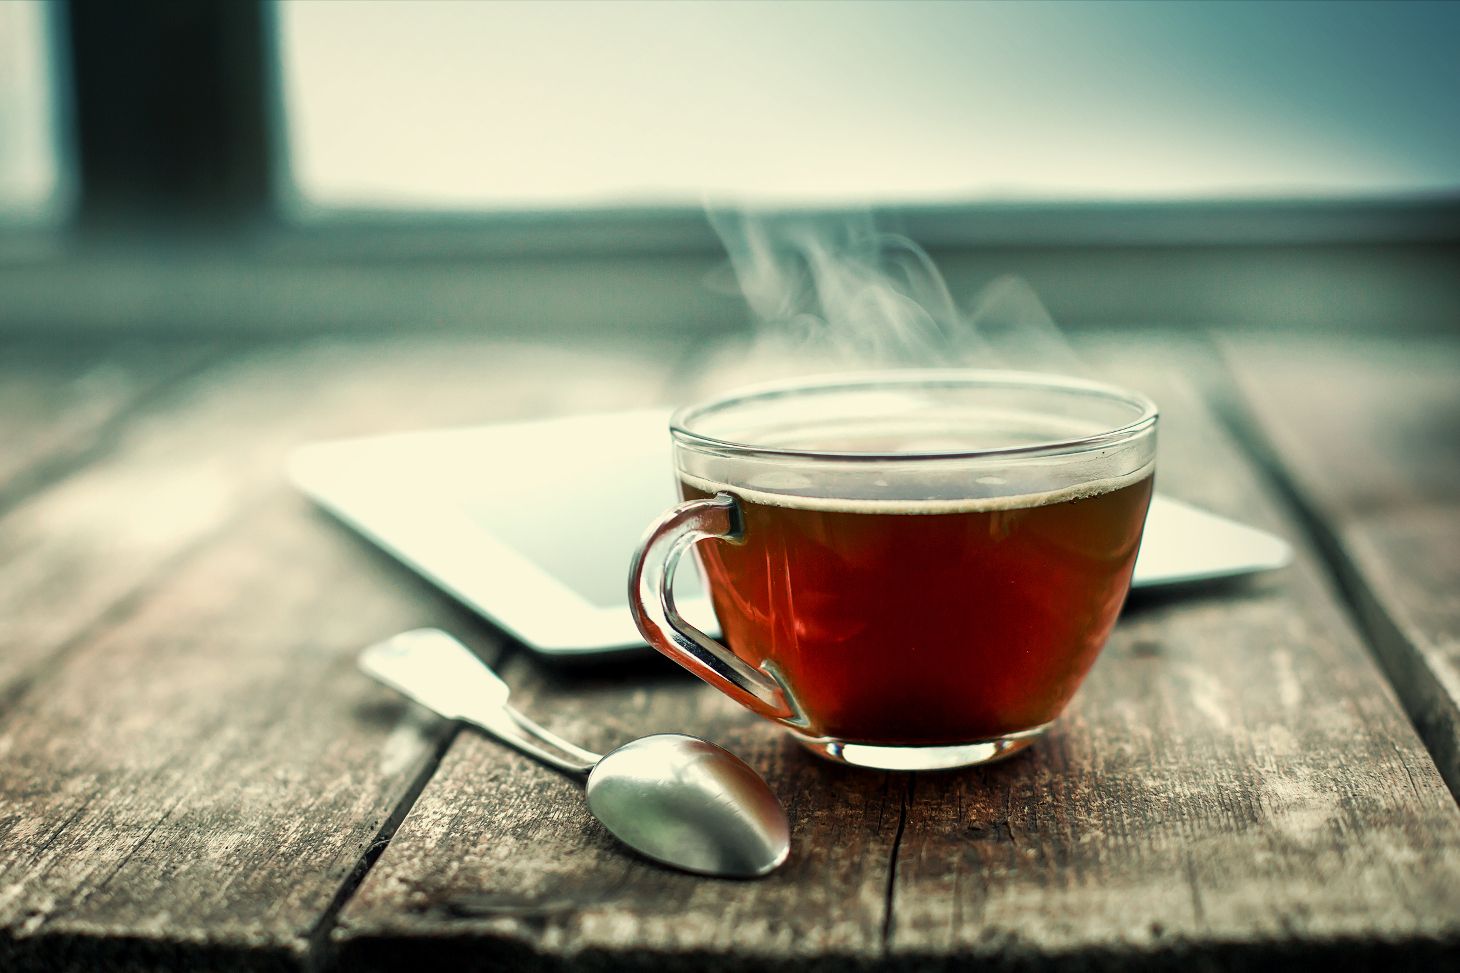 Comment faire pour profiter pleinement des antioxydants présents dans le thé ?